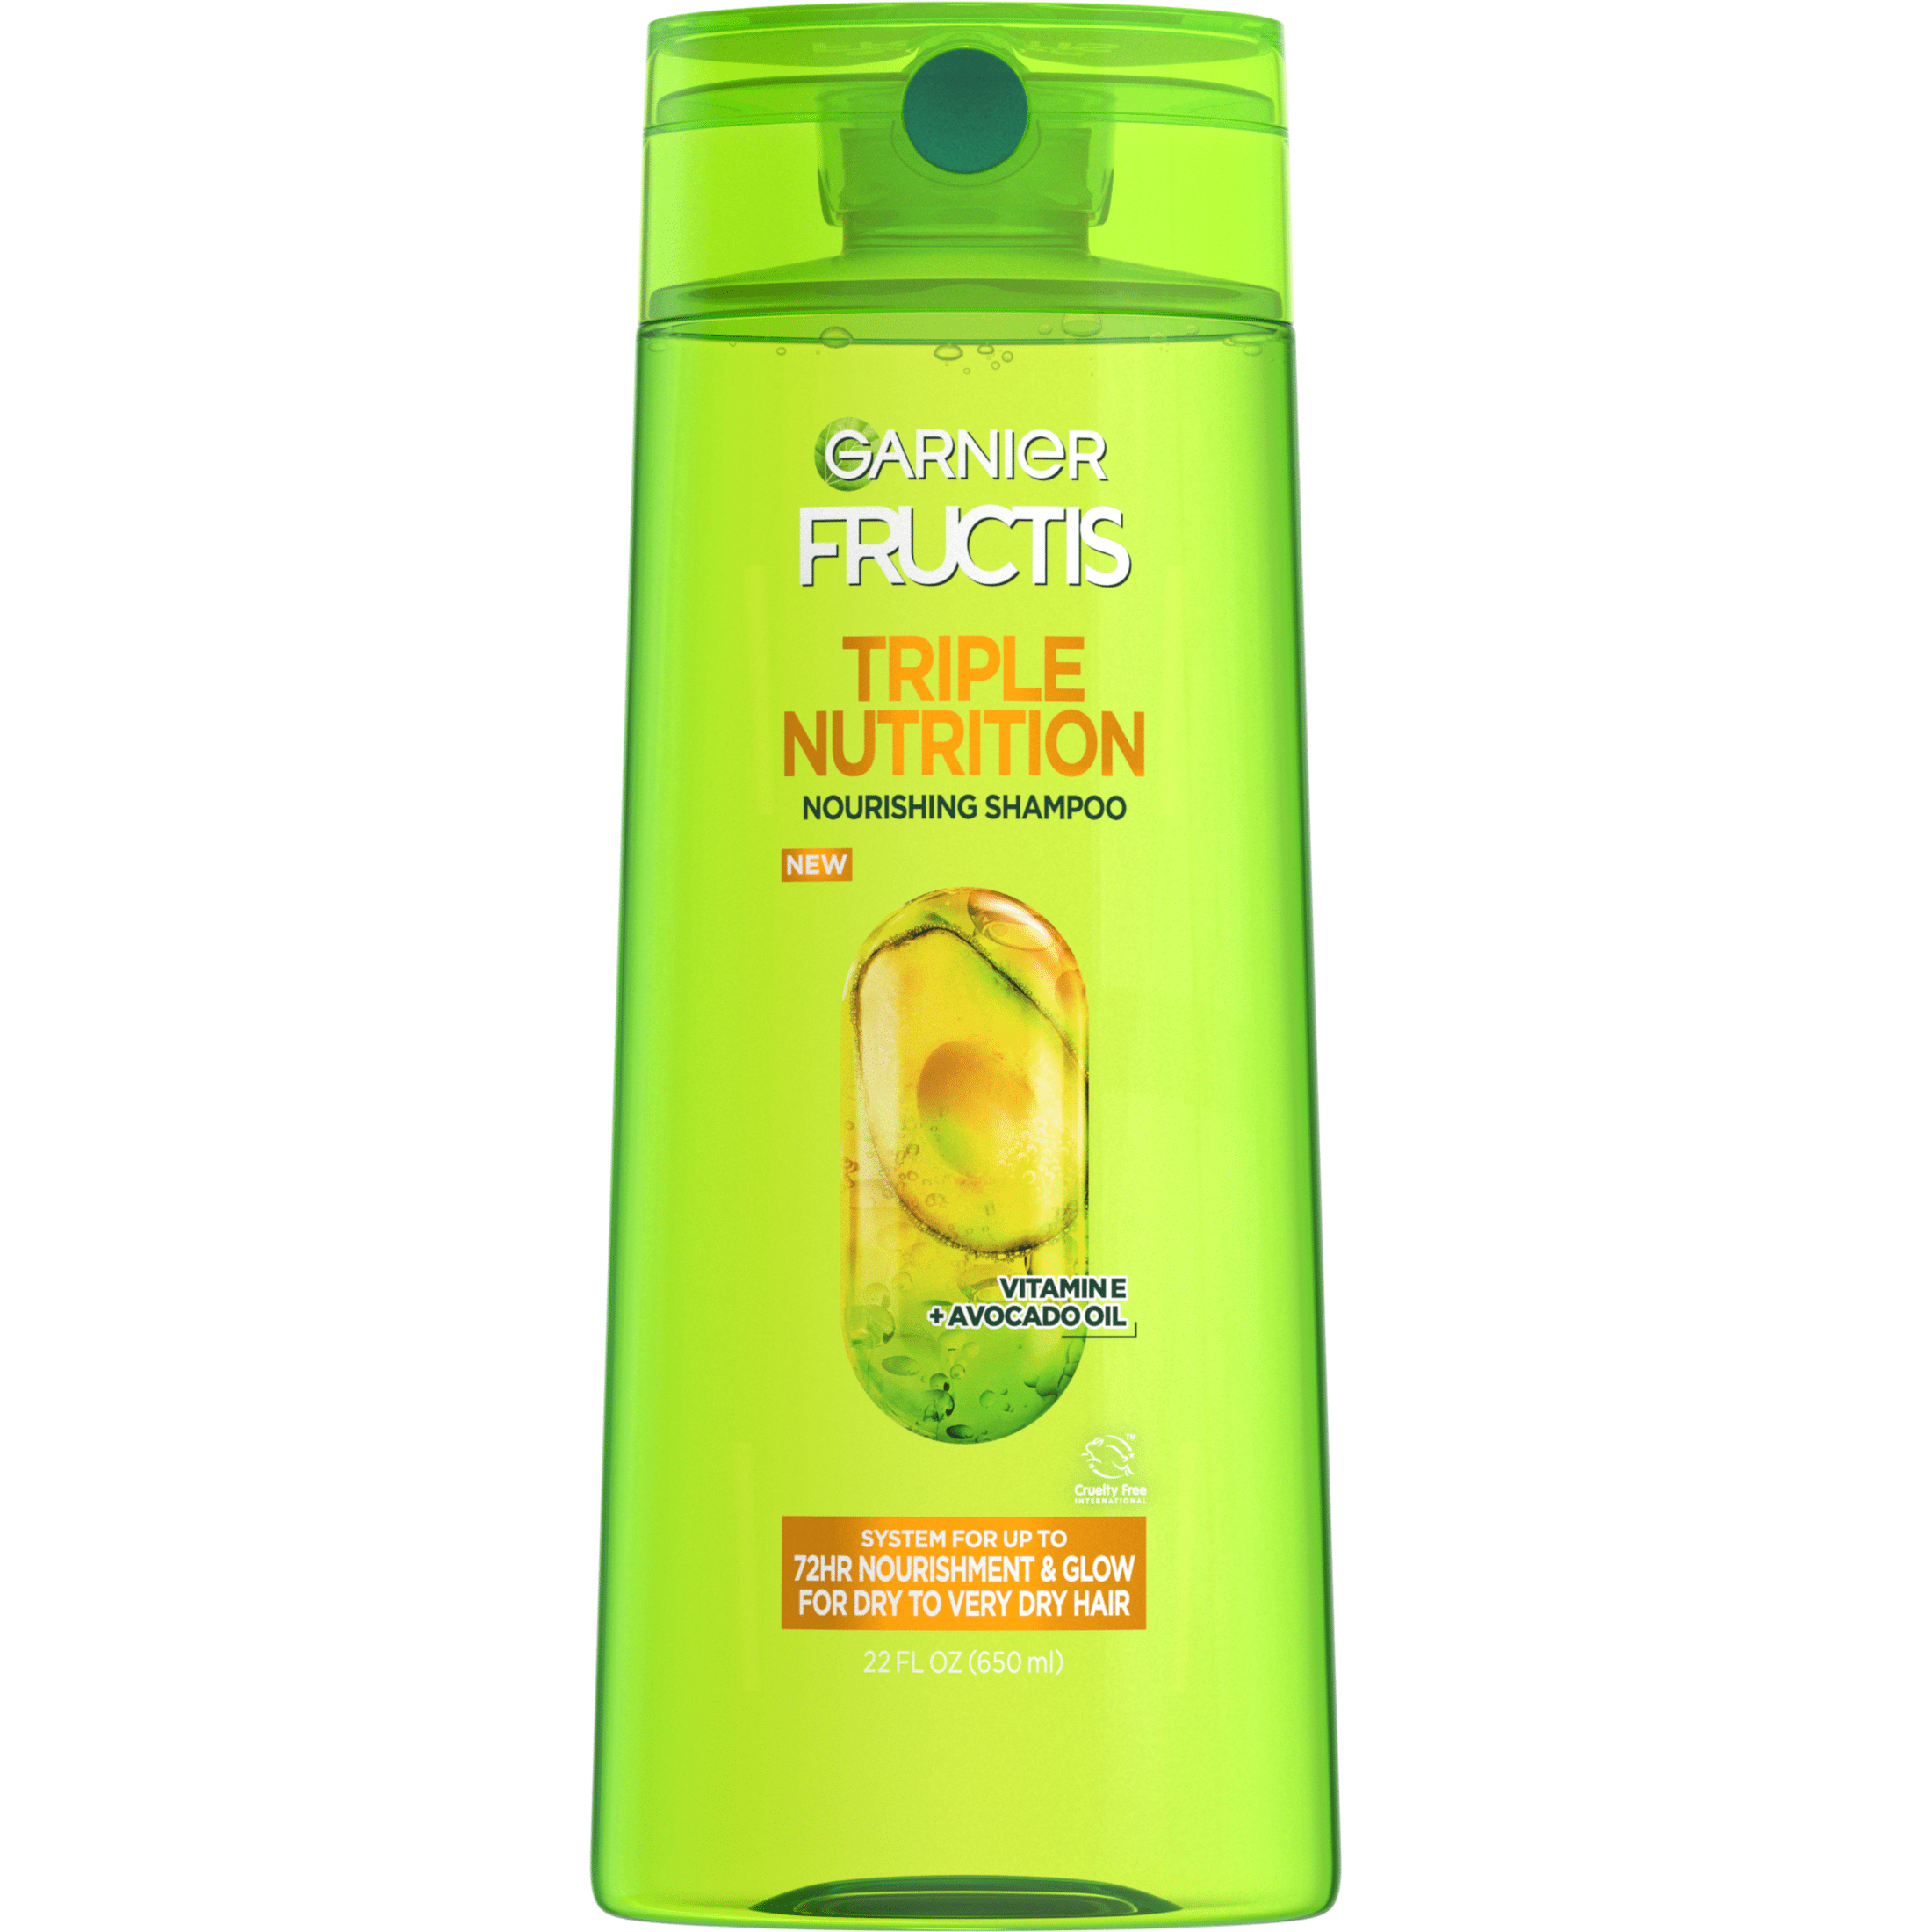 Garnier Fructis Triple Nutrition Nourishing Shampoo, Dry to Very Dry Hair, fl oz - Walmart.com